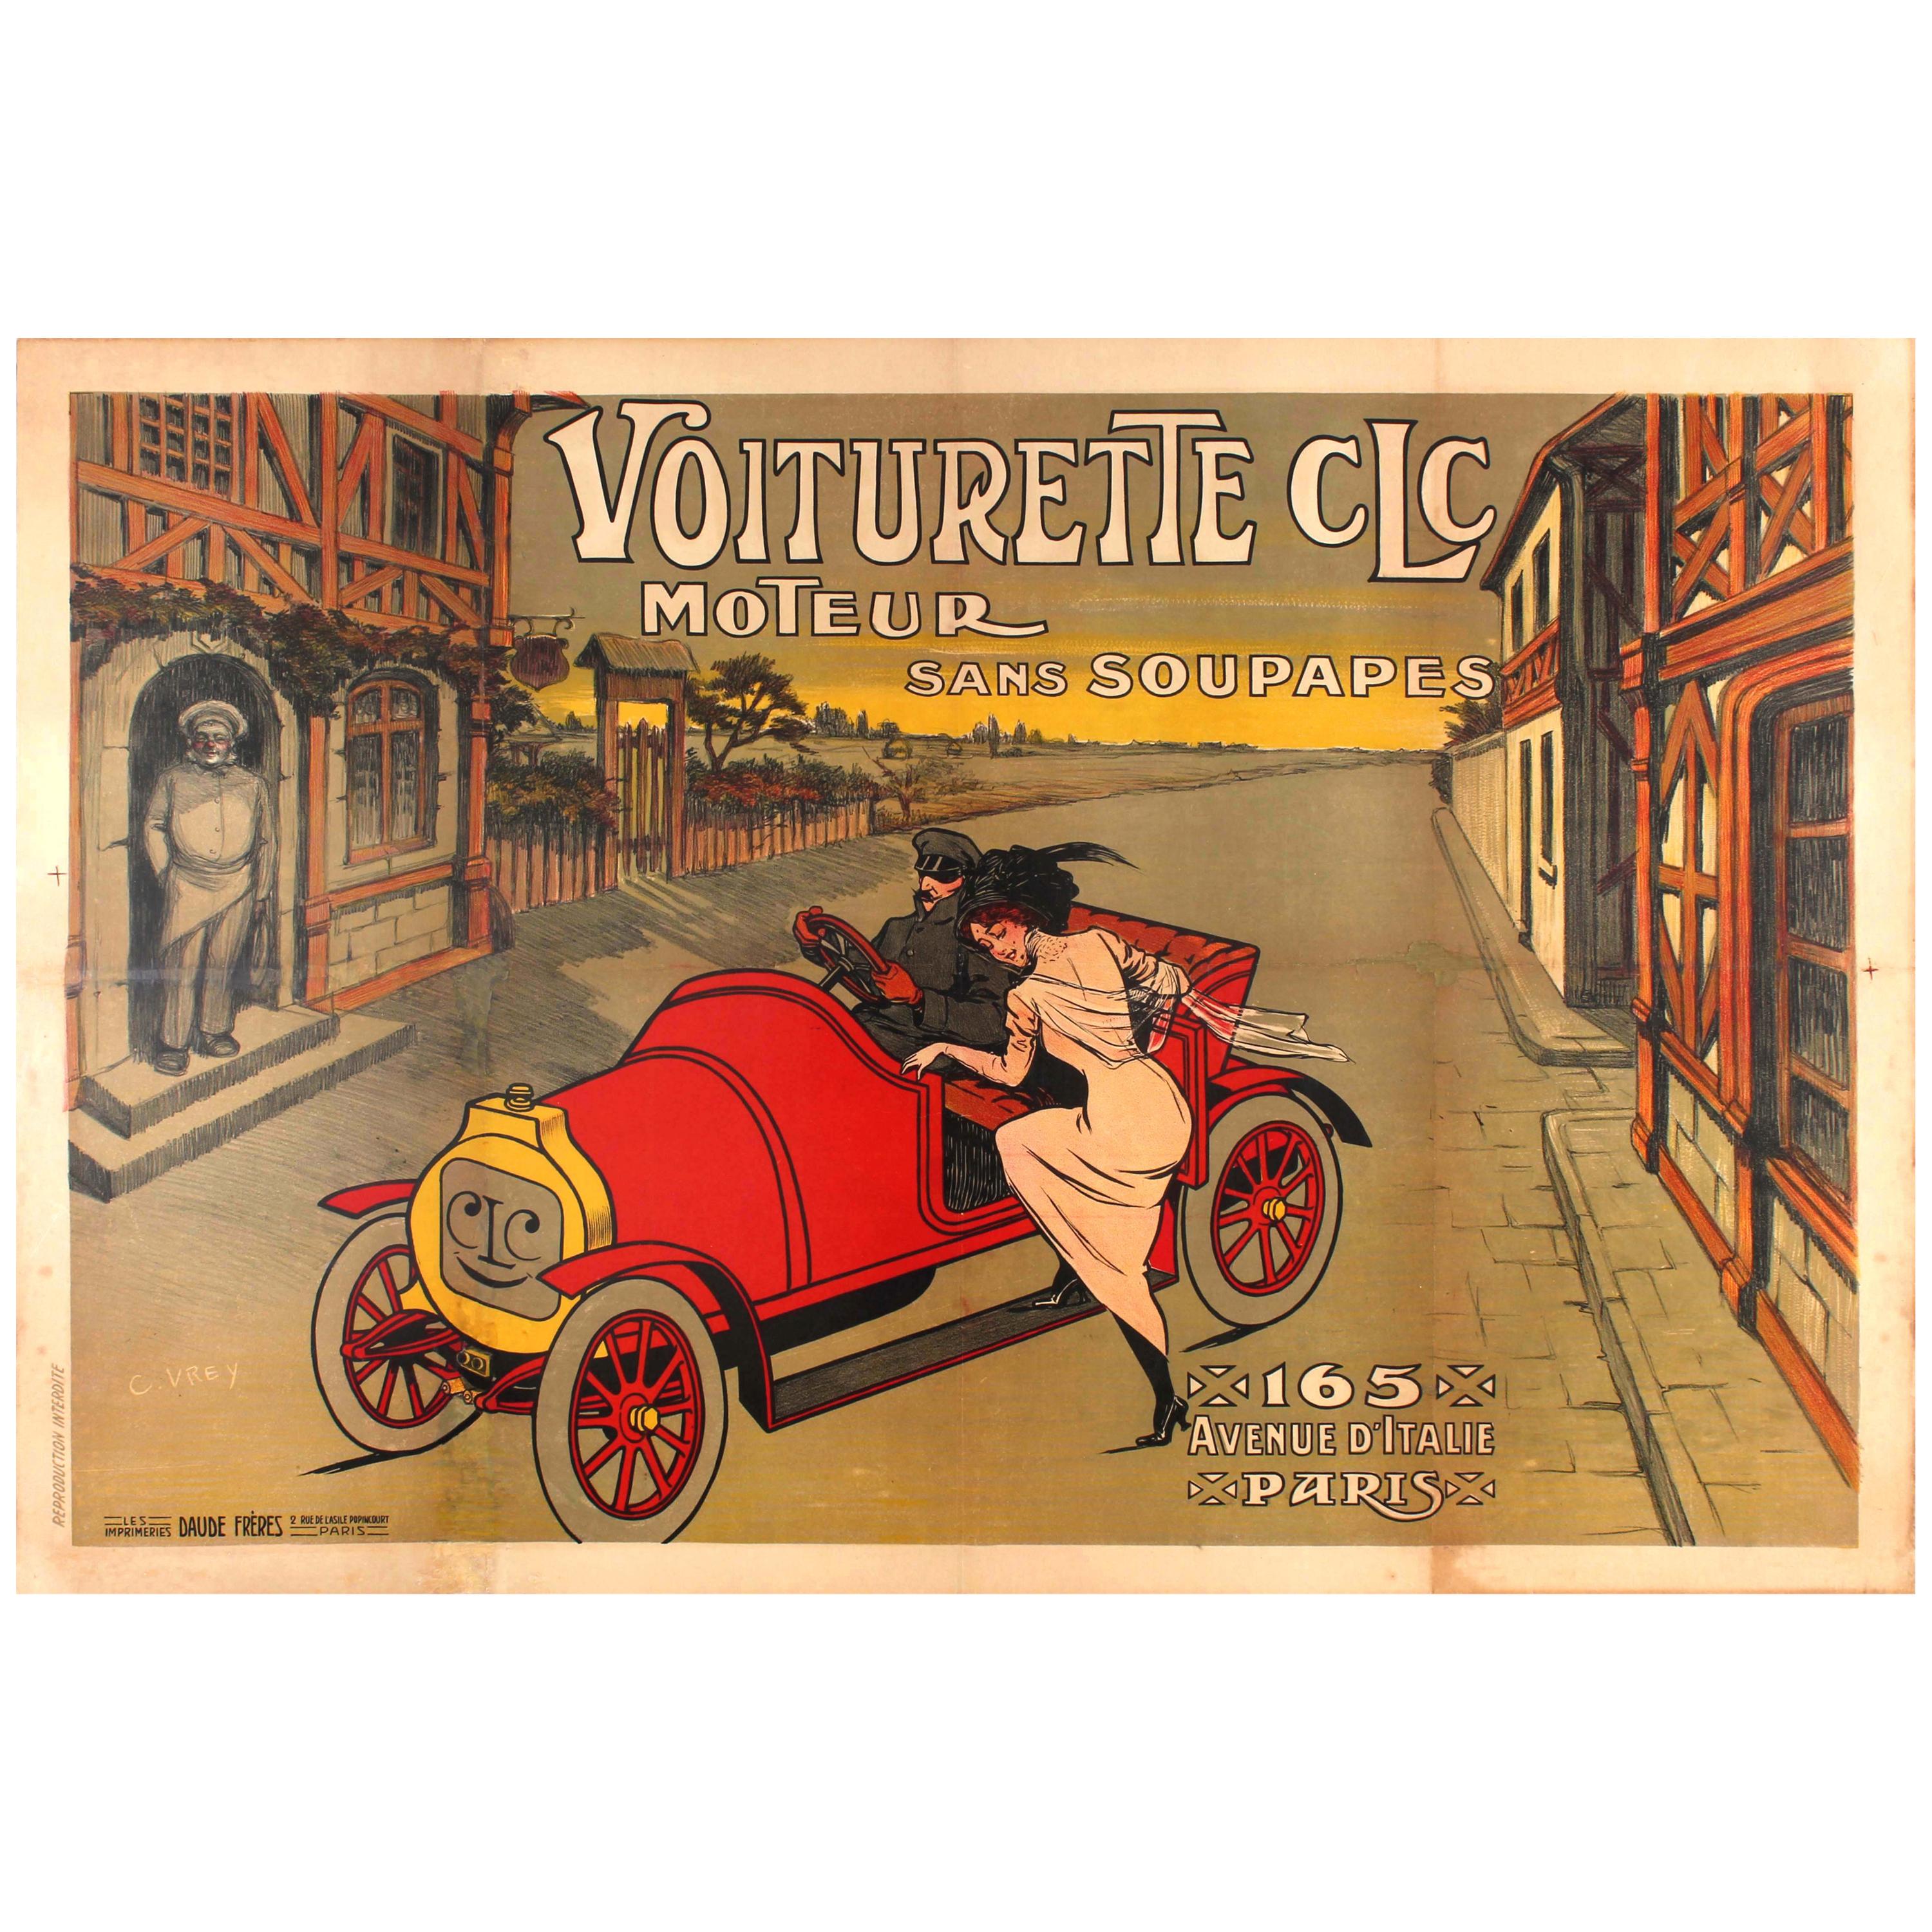 Large Early Original Antique Car Poster for the Voiturette CLC Automobile Paris